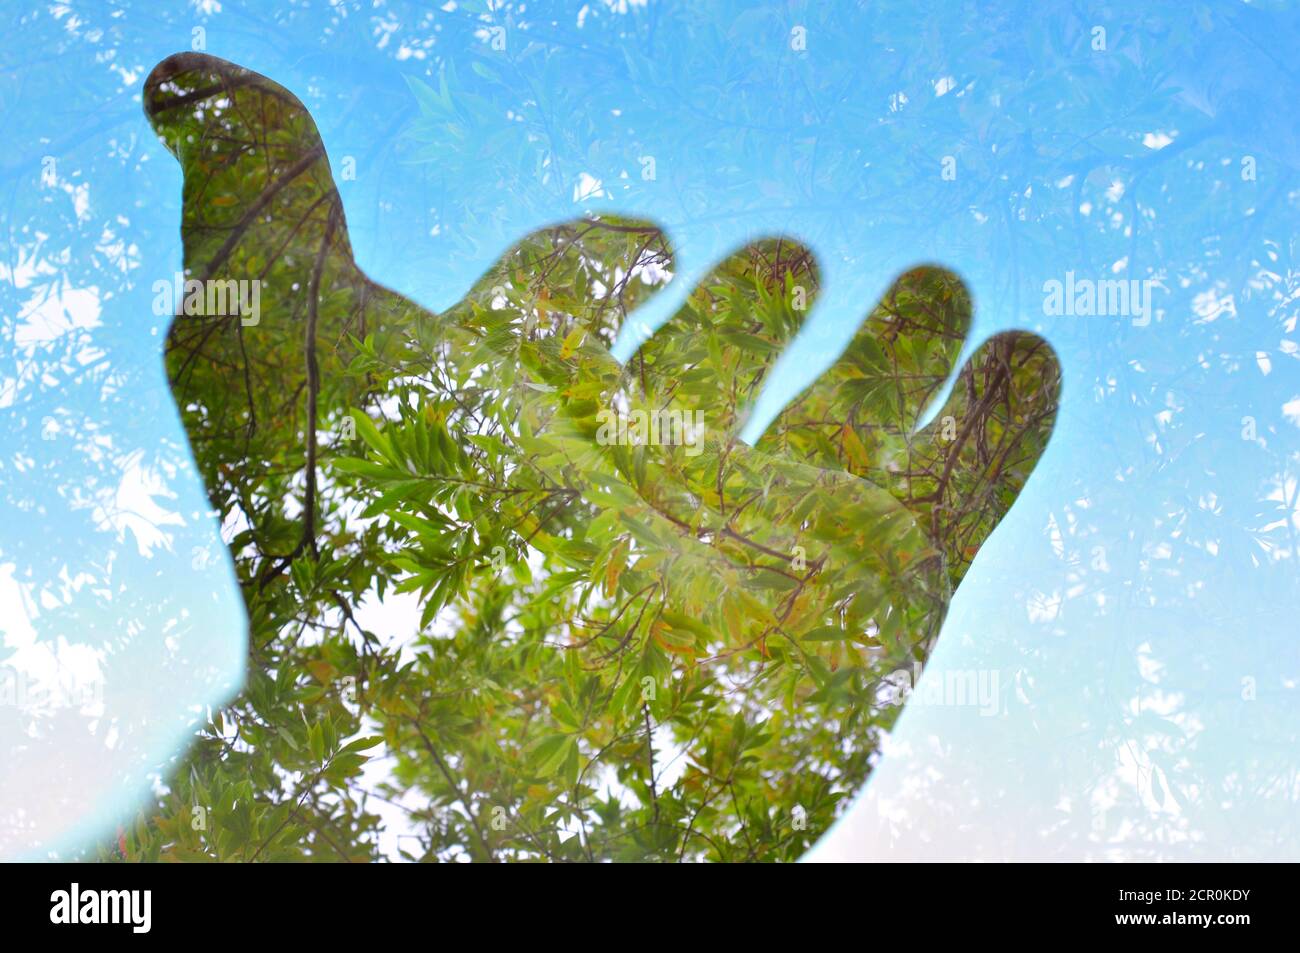 Concetto di natura, ecologia ambientale, mano e foglie verdi Foto Stock